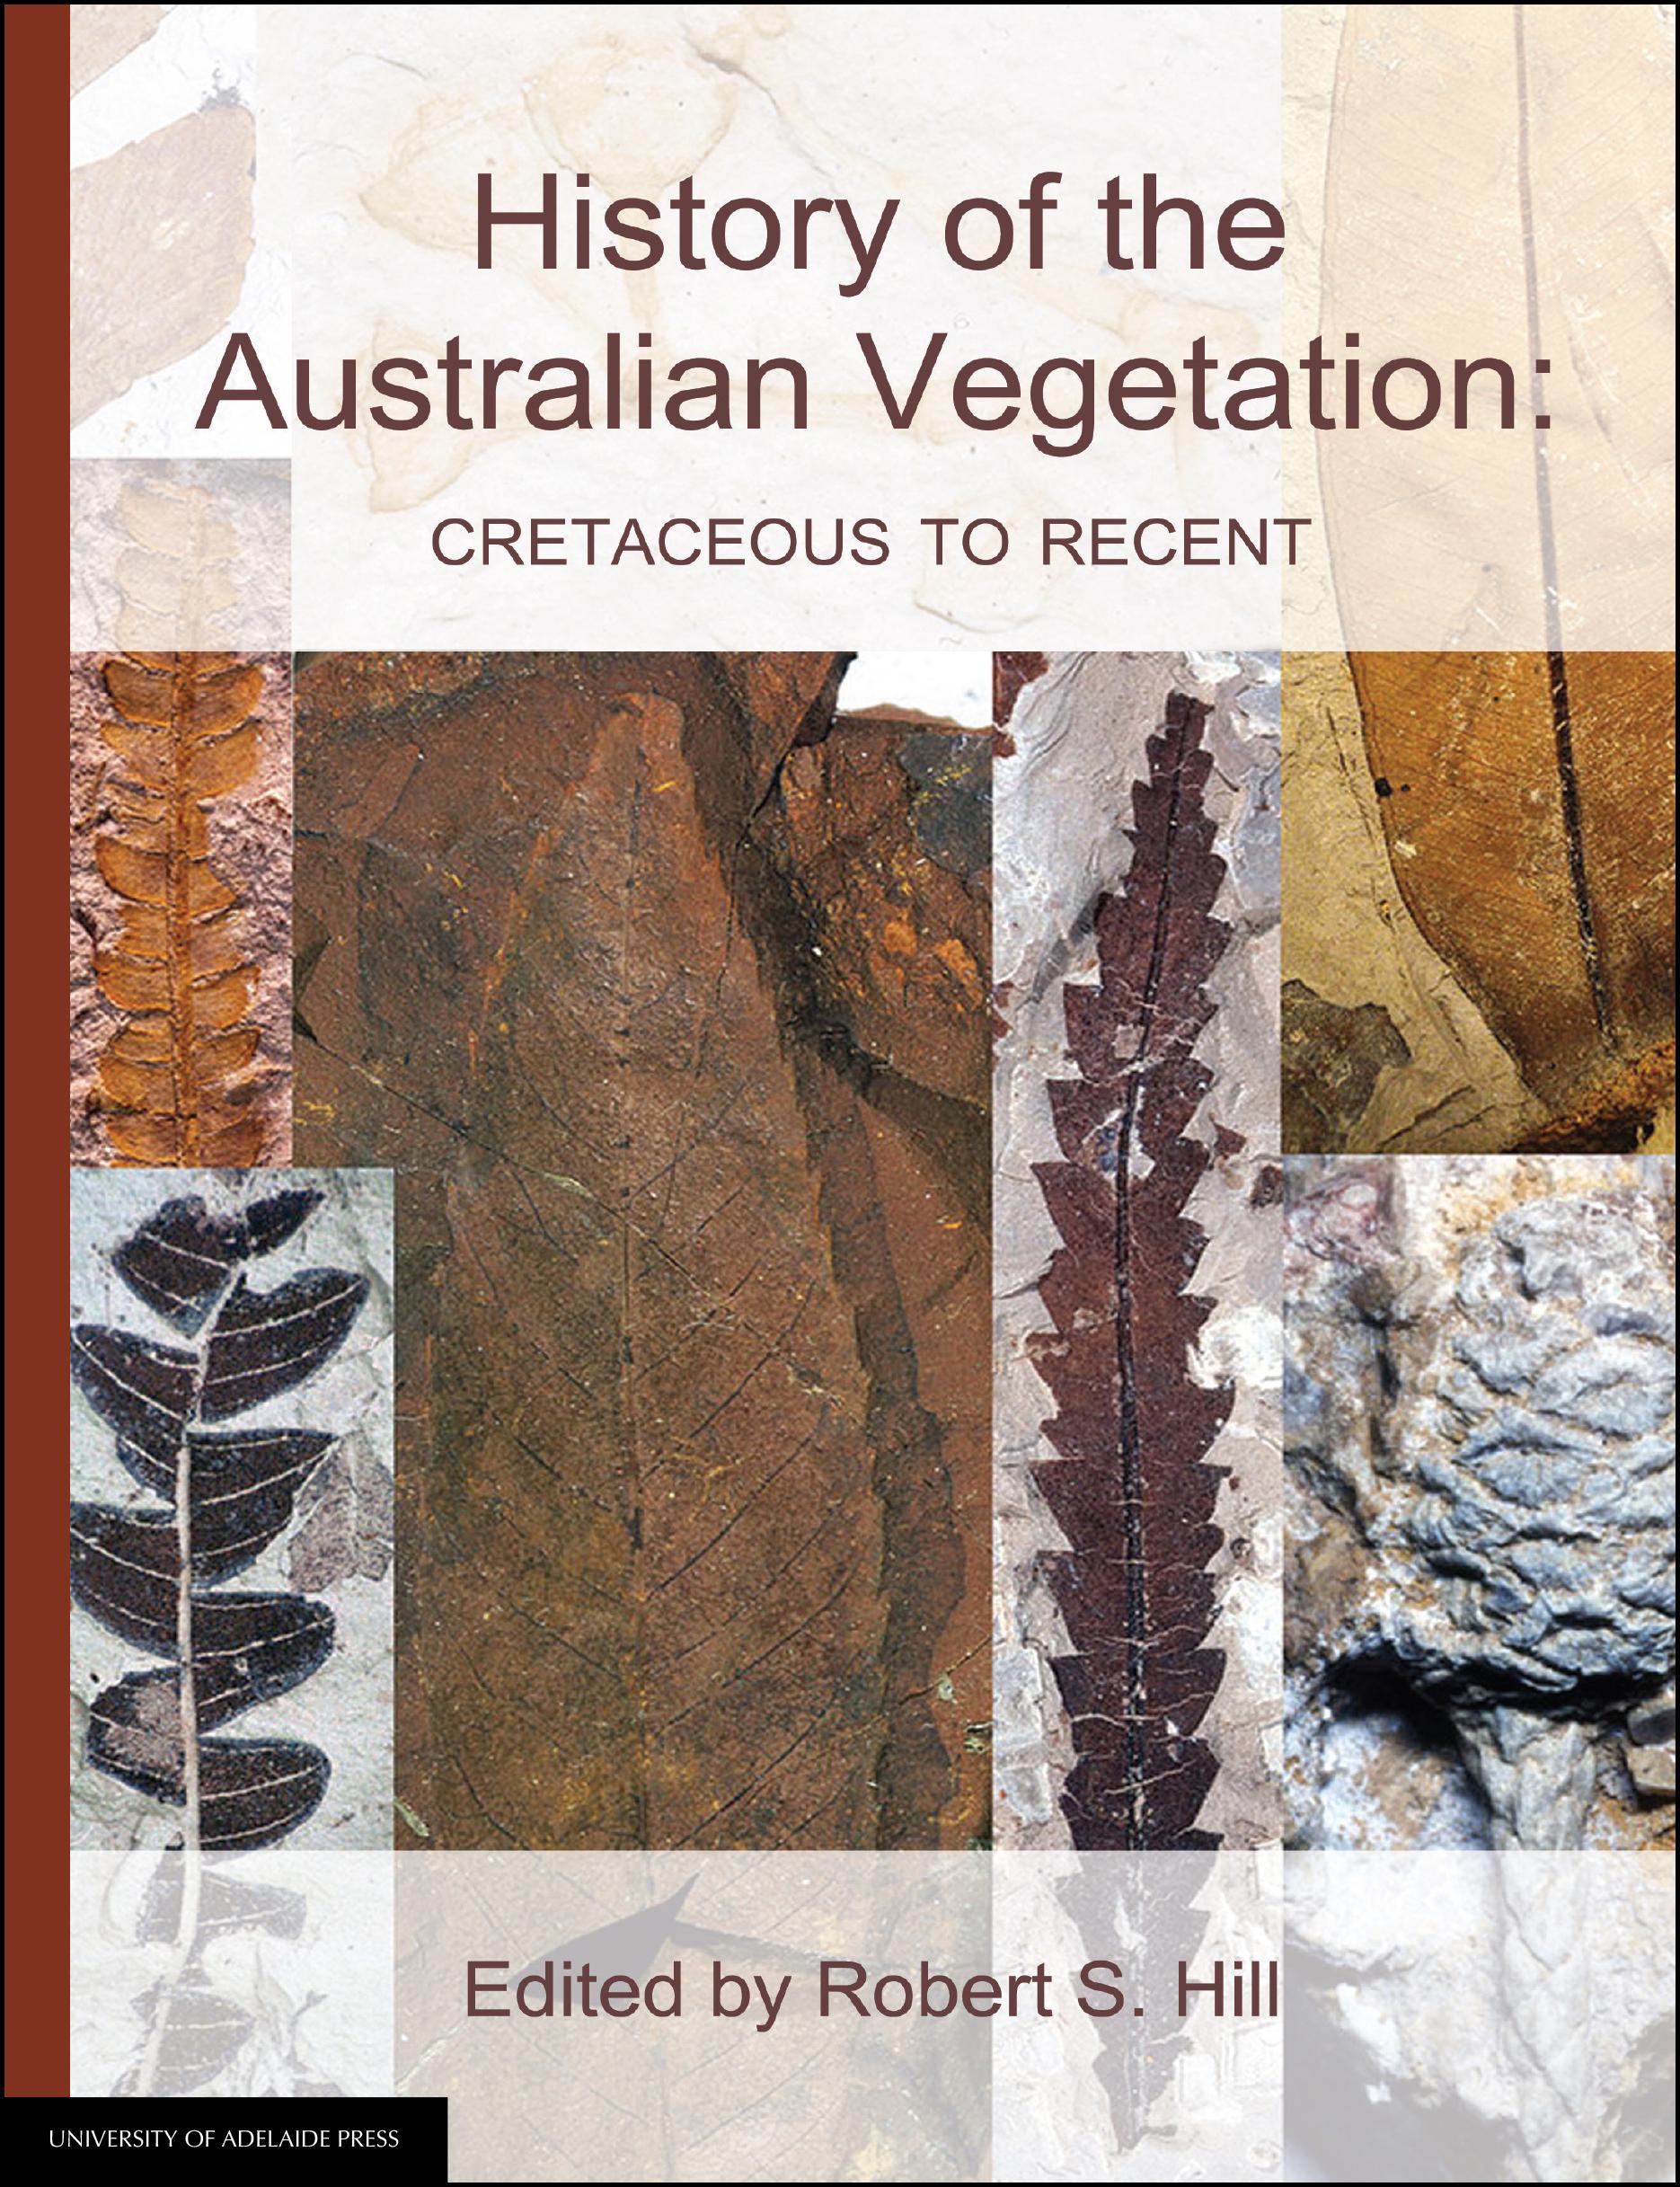 Australian Vegetation cover